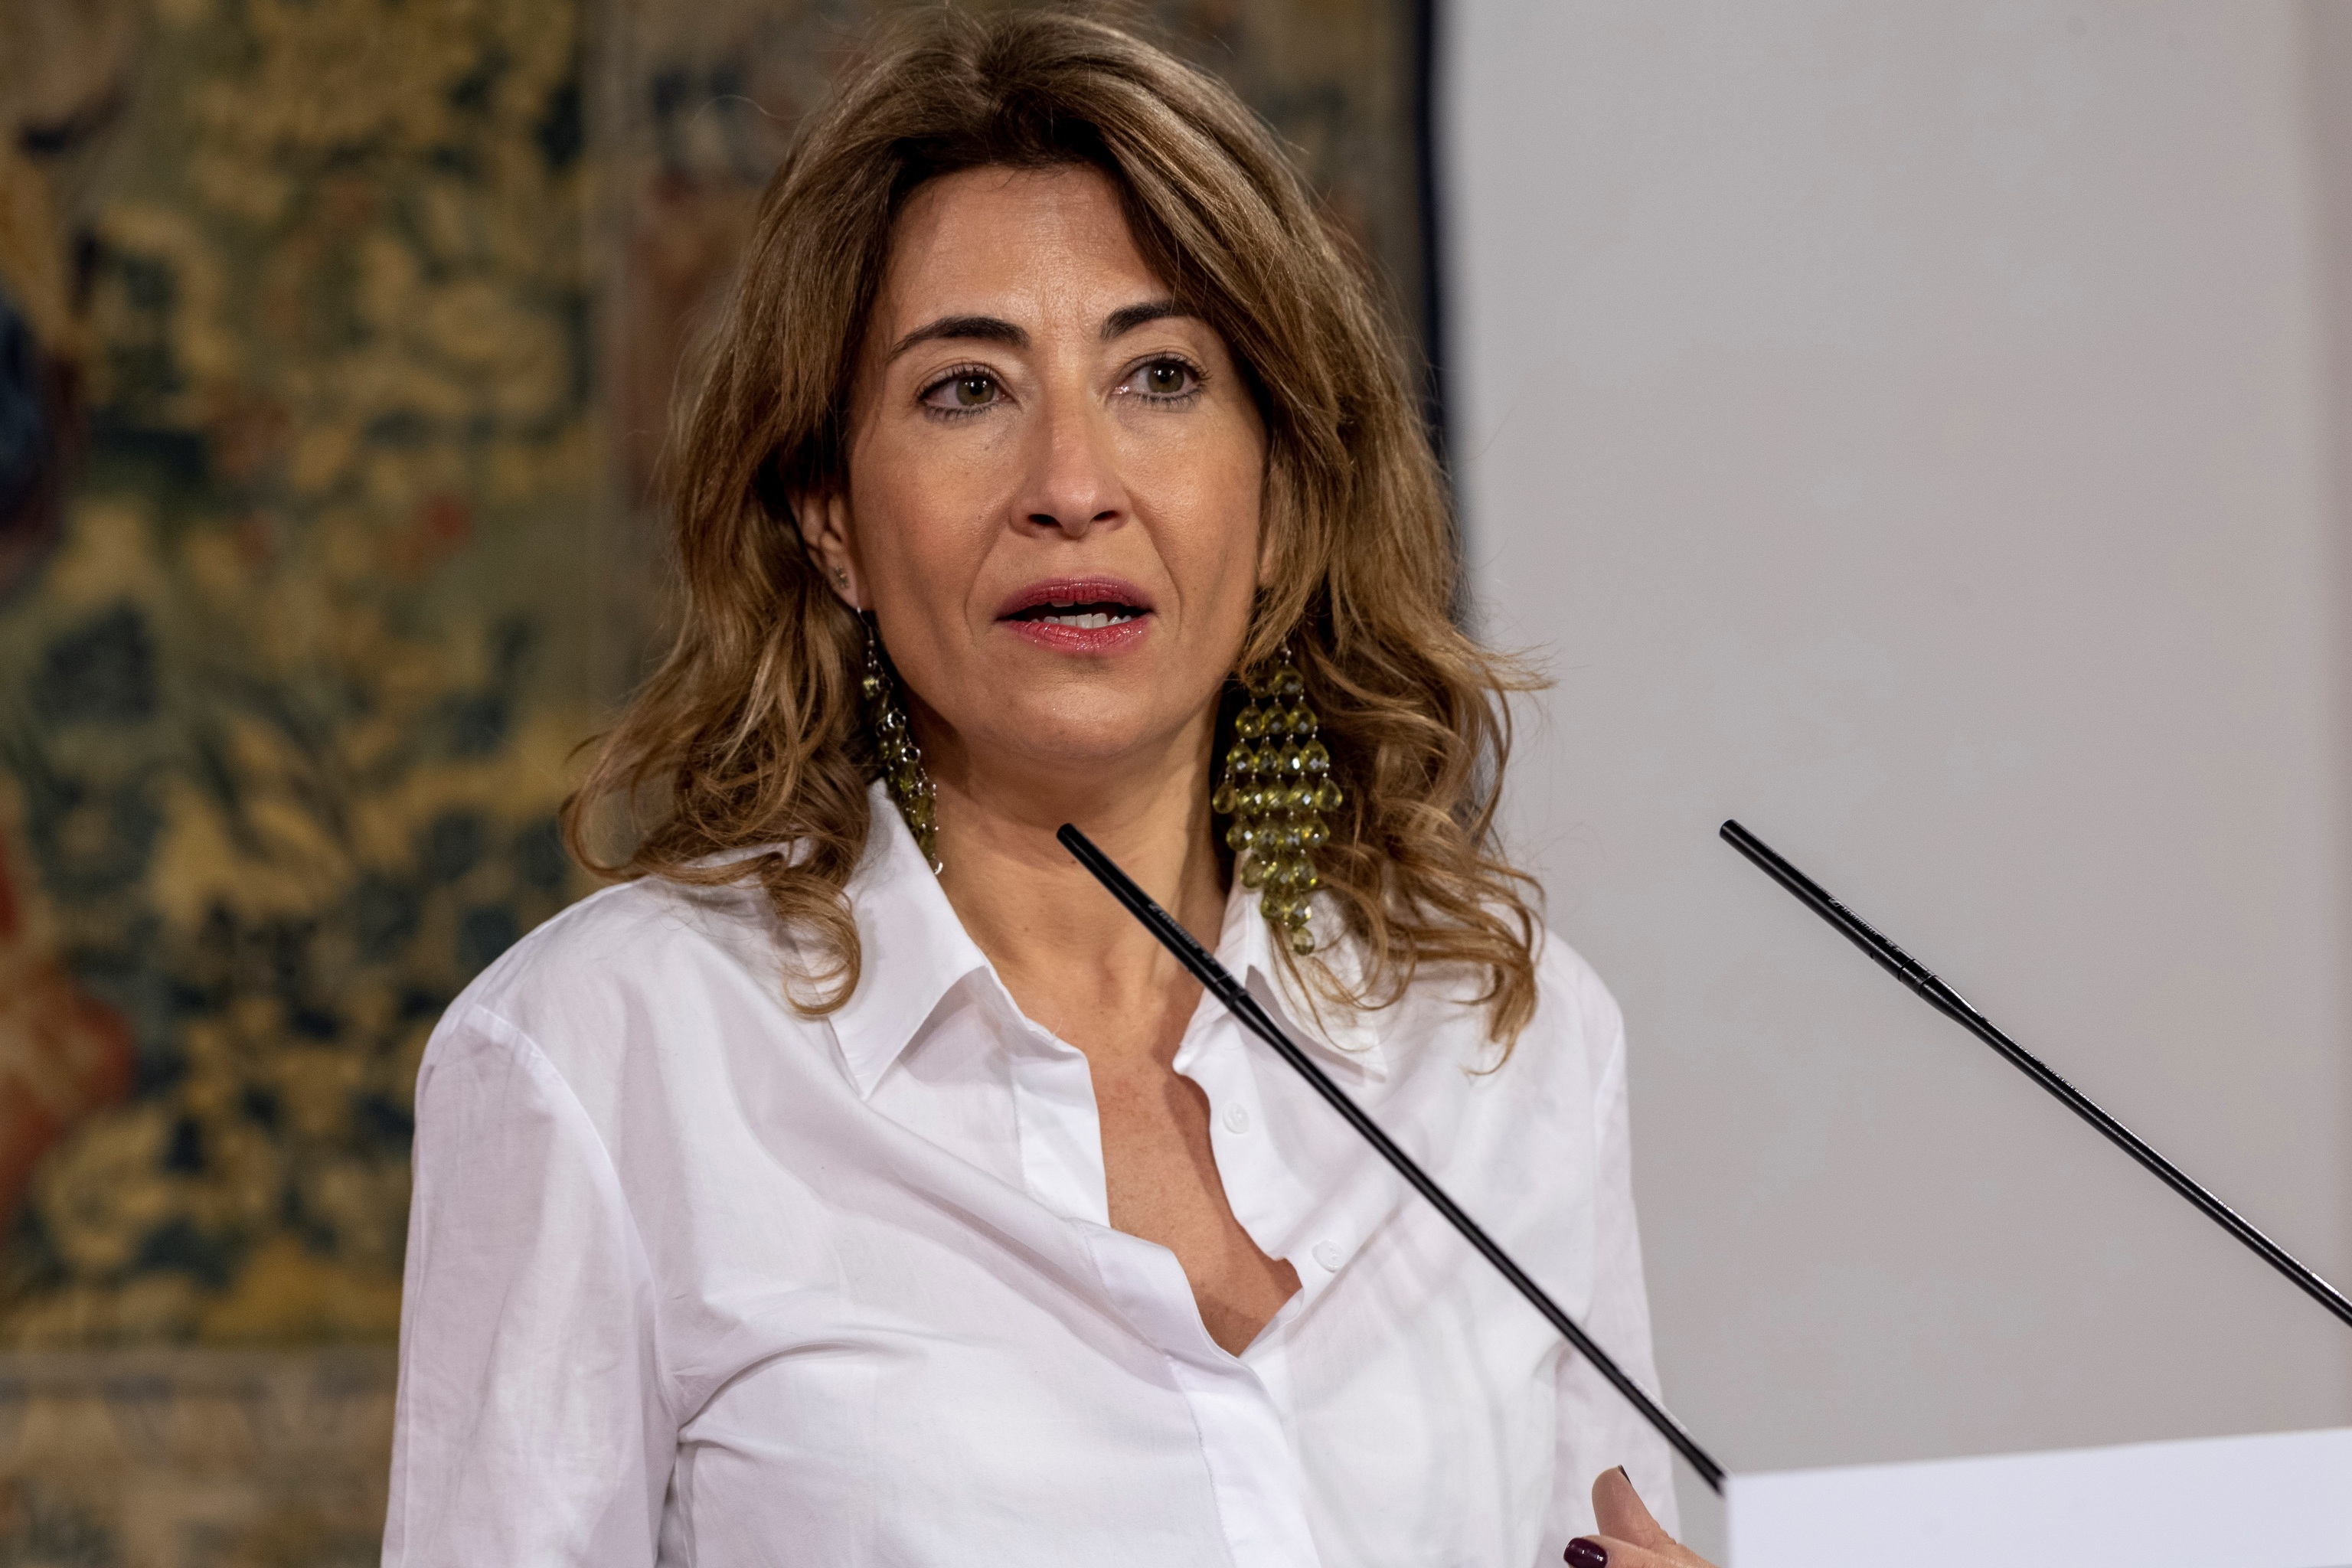 La ministra de Transportes, Movilidad y Agenda Urbana, Raquel Sánchez.